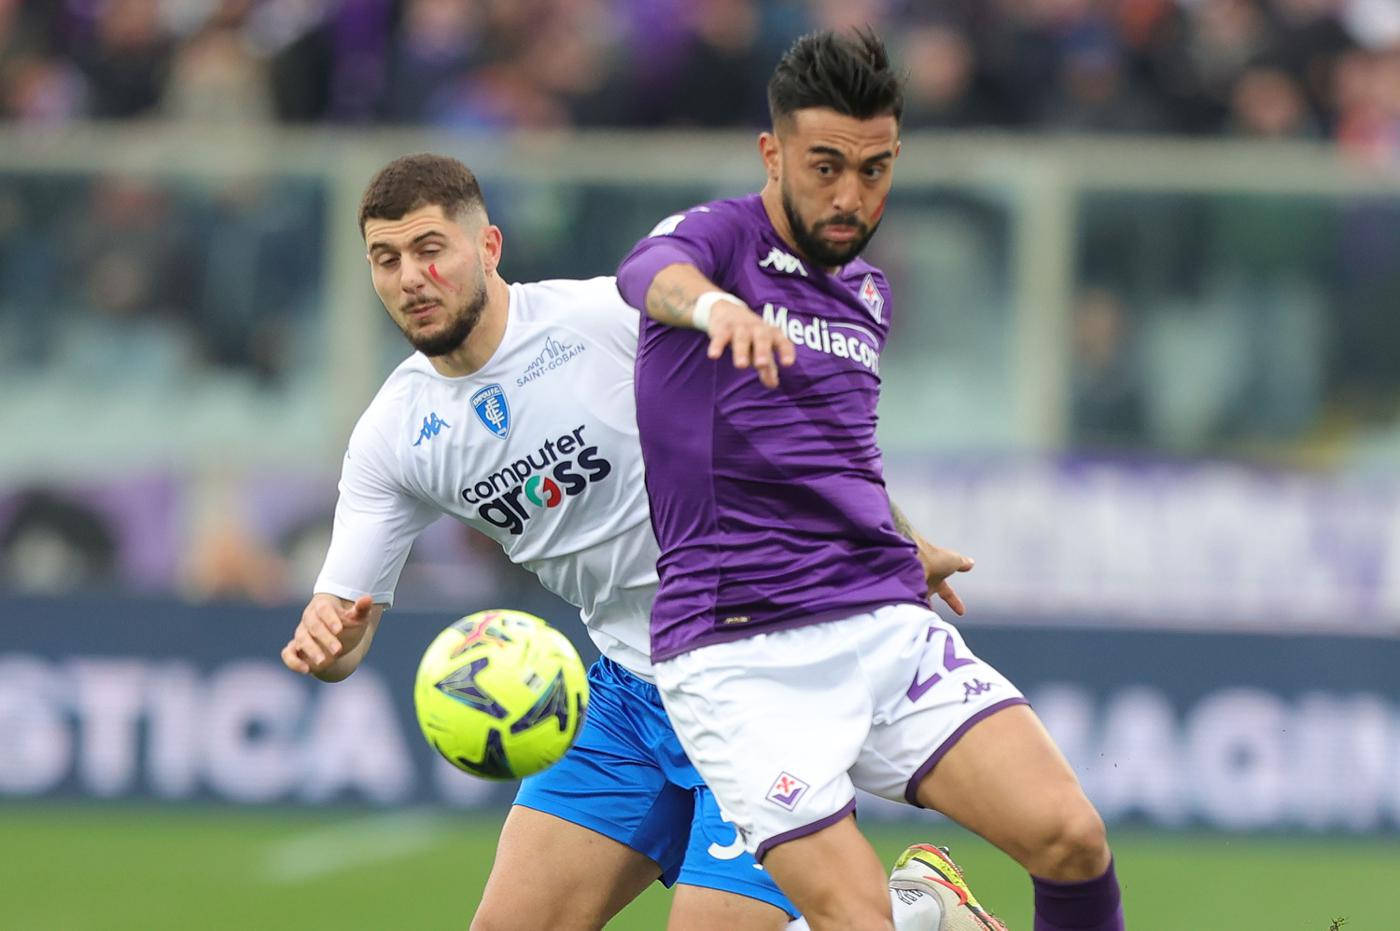 Fiorentina - Empoli - 1:1. Mistrzostwa Włoch, 23. runda. Przegląd meczu, statystyki